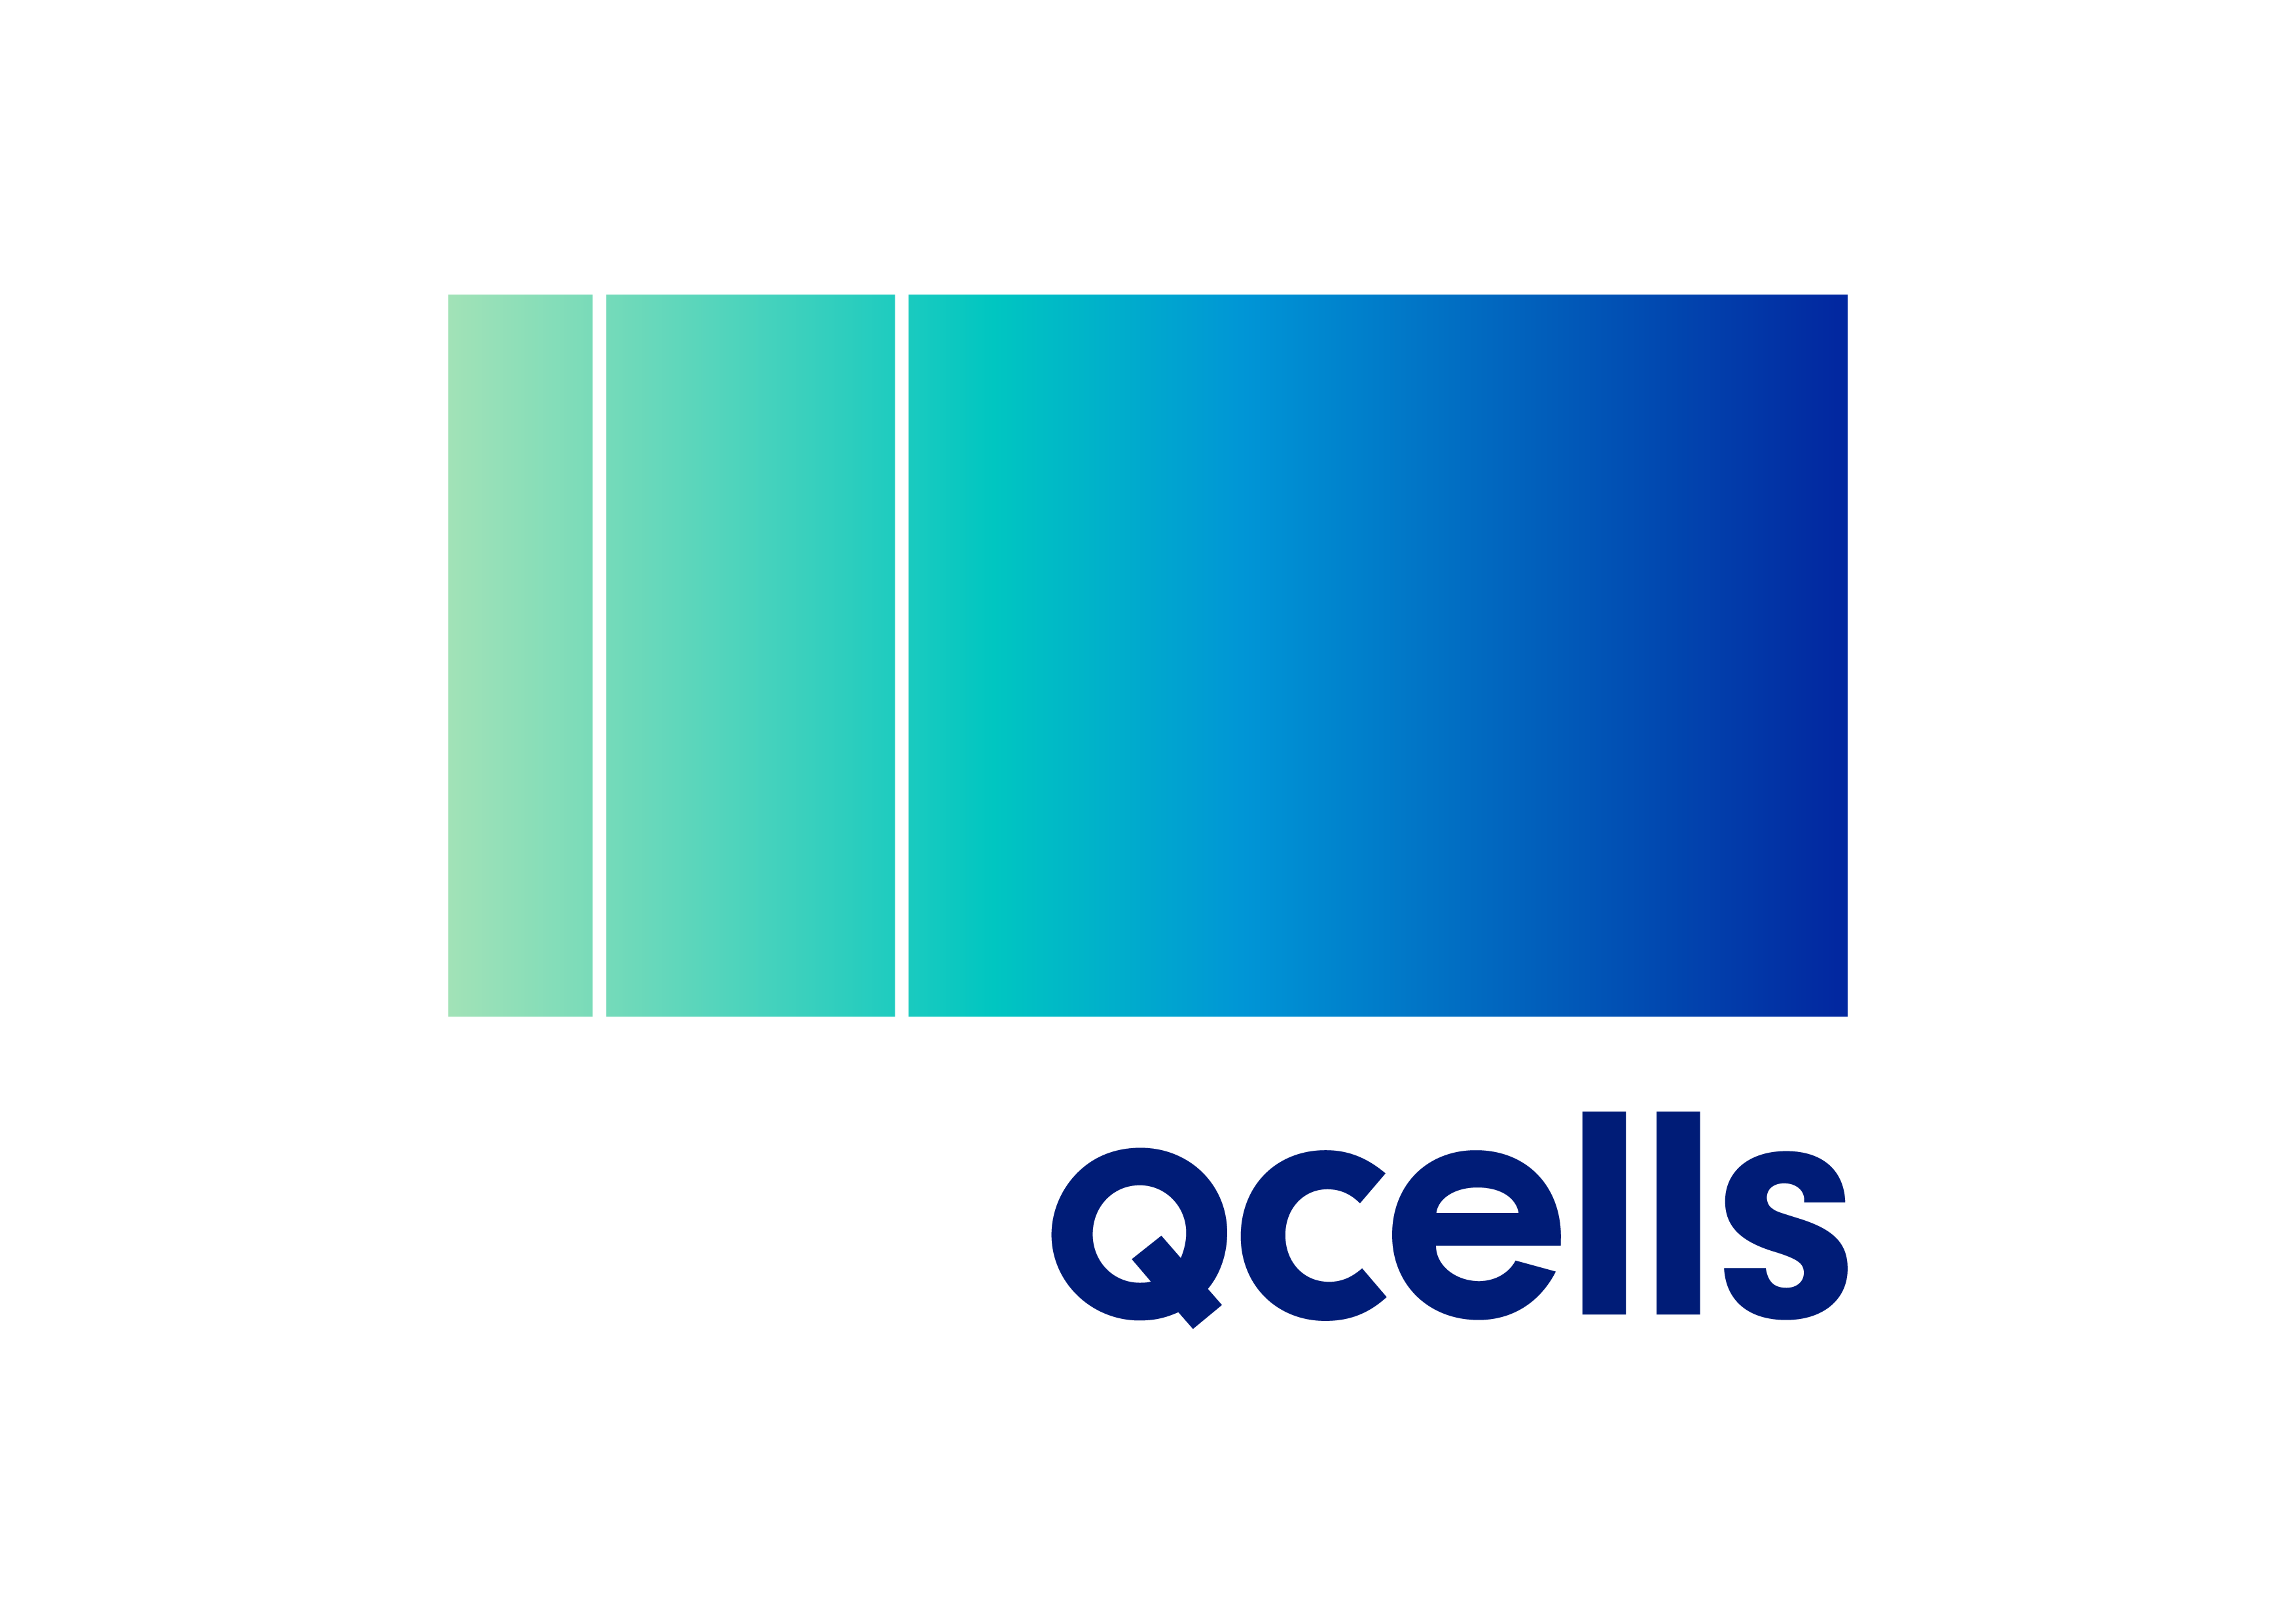 Q Cells image